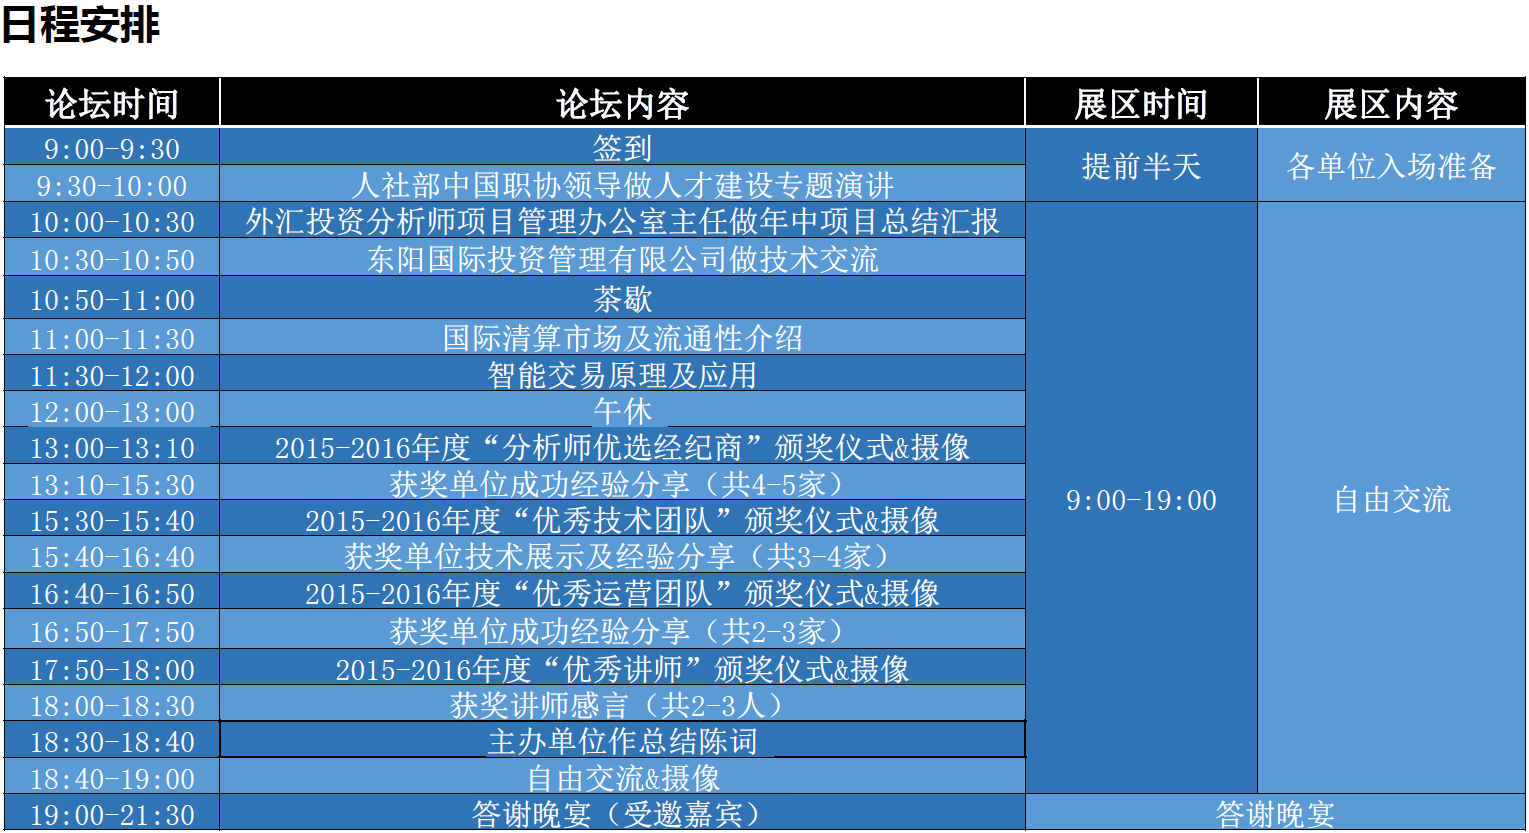 正文  活动时间:8月20日周六全天 活动地点:北京三元桥希尔顿酒店